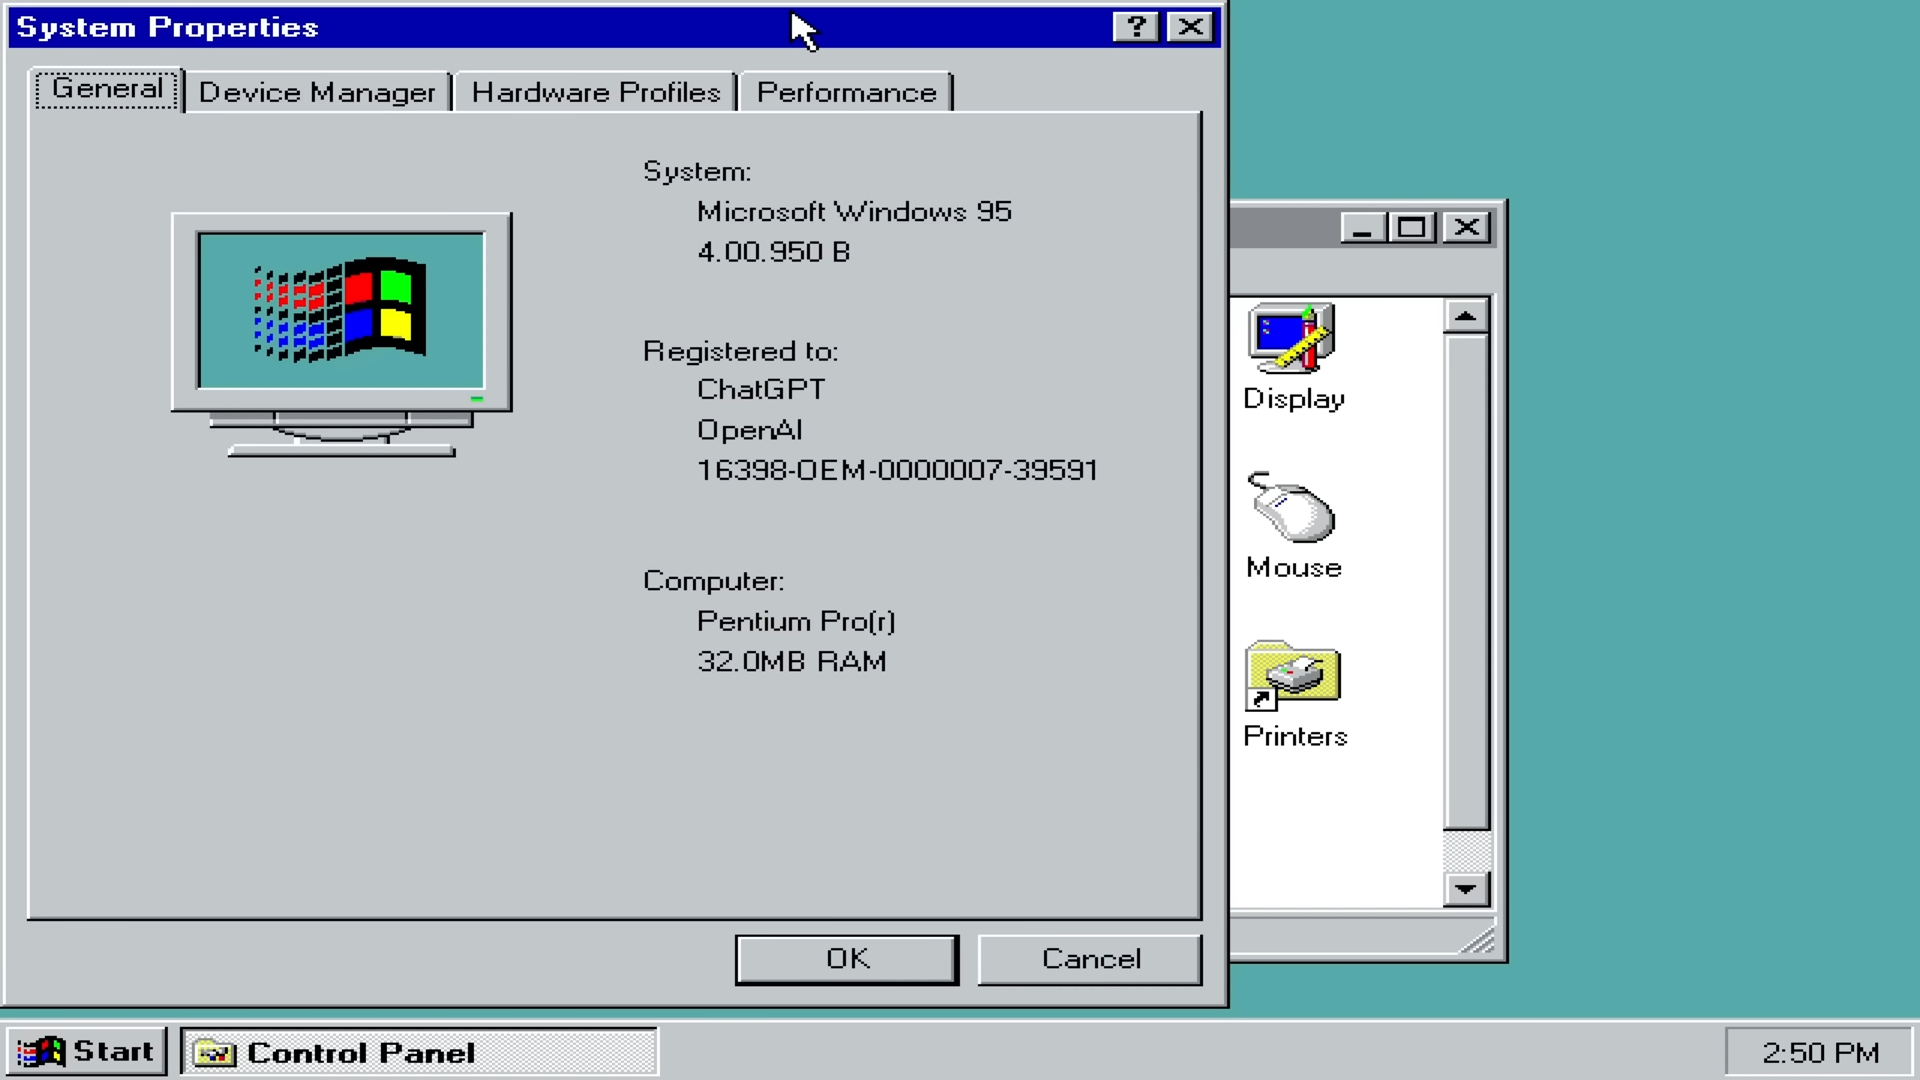 Imagem mostra ativação do Windows 95 feita por chave gerada pelo ChatGPT